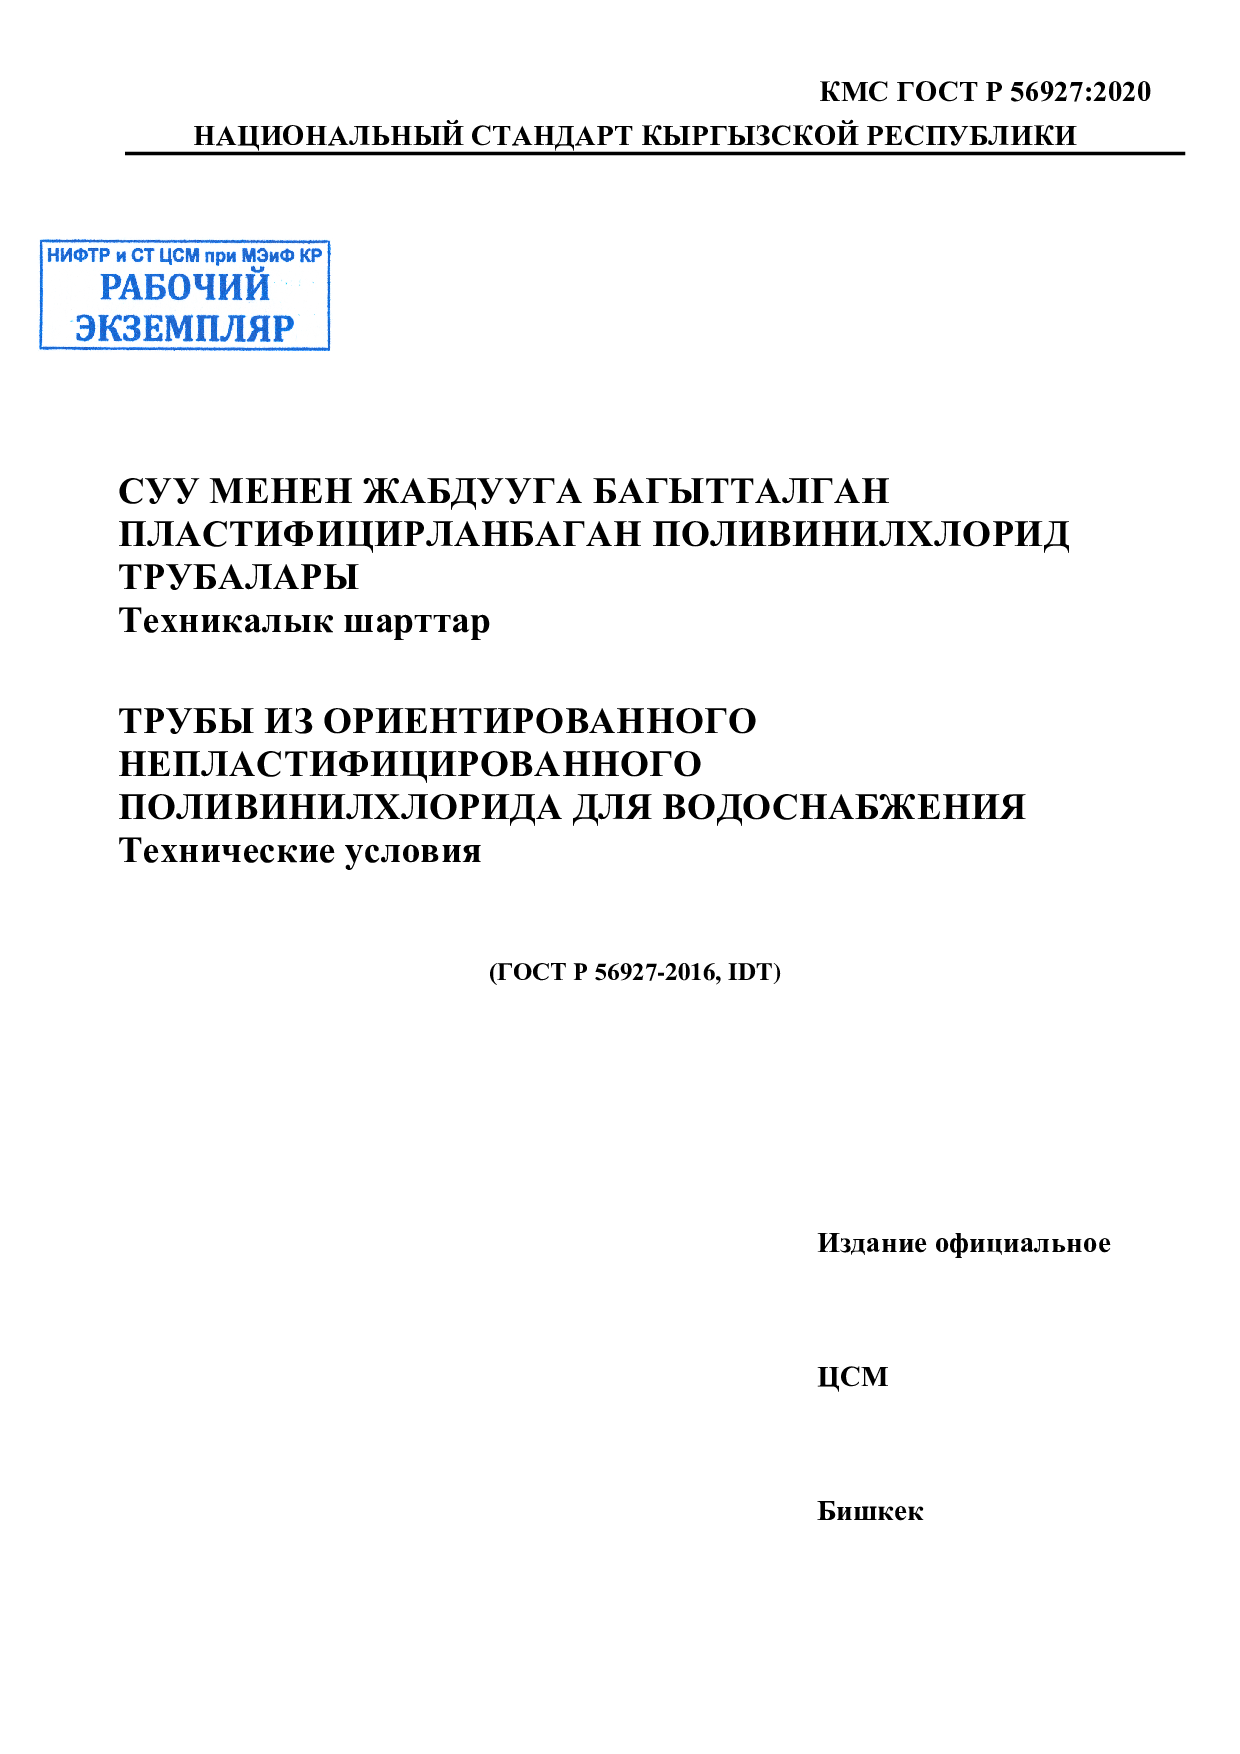 Трубы из ориентированного непластифицированного поливинилхлорида для водоснабжения. Технические условия  (ГОСТ Р 56927-2016, IDT)